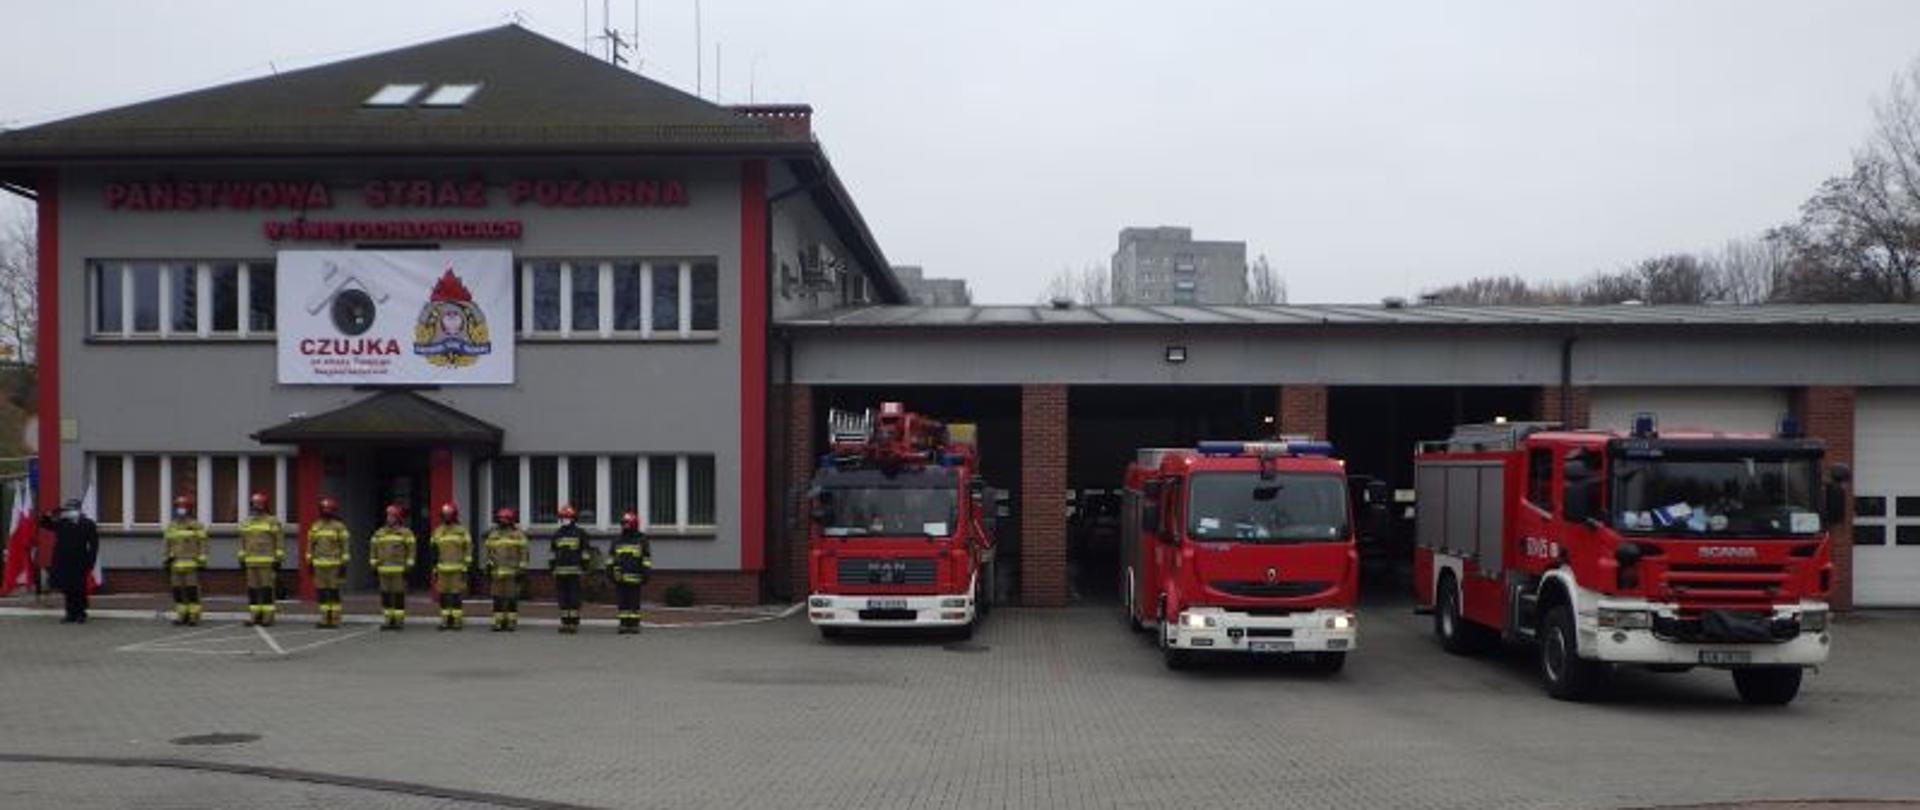 Zdjęcie przedstawia strażaków stojących na baczność przed budynkiem komendy miejskiej Państwowej Straży Pożarnej w Świętochłowicach. Po prawej stronie przed bramami garażowymi stoją zaparkowane samochody pożarnicze.